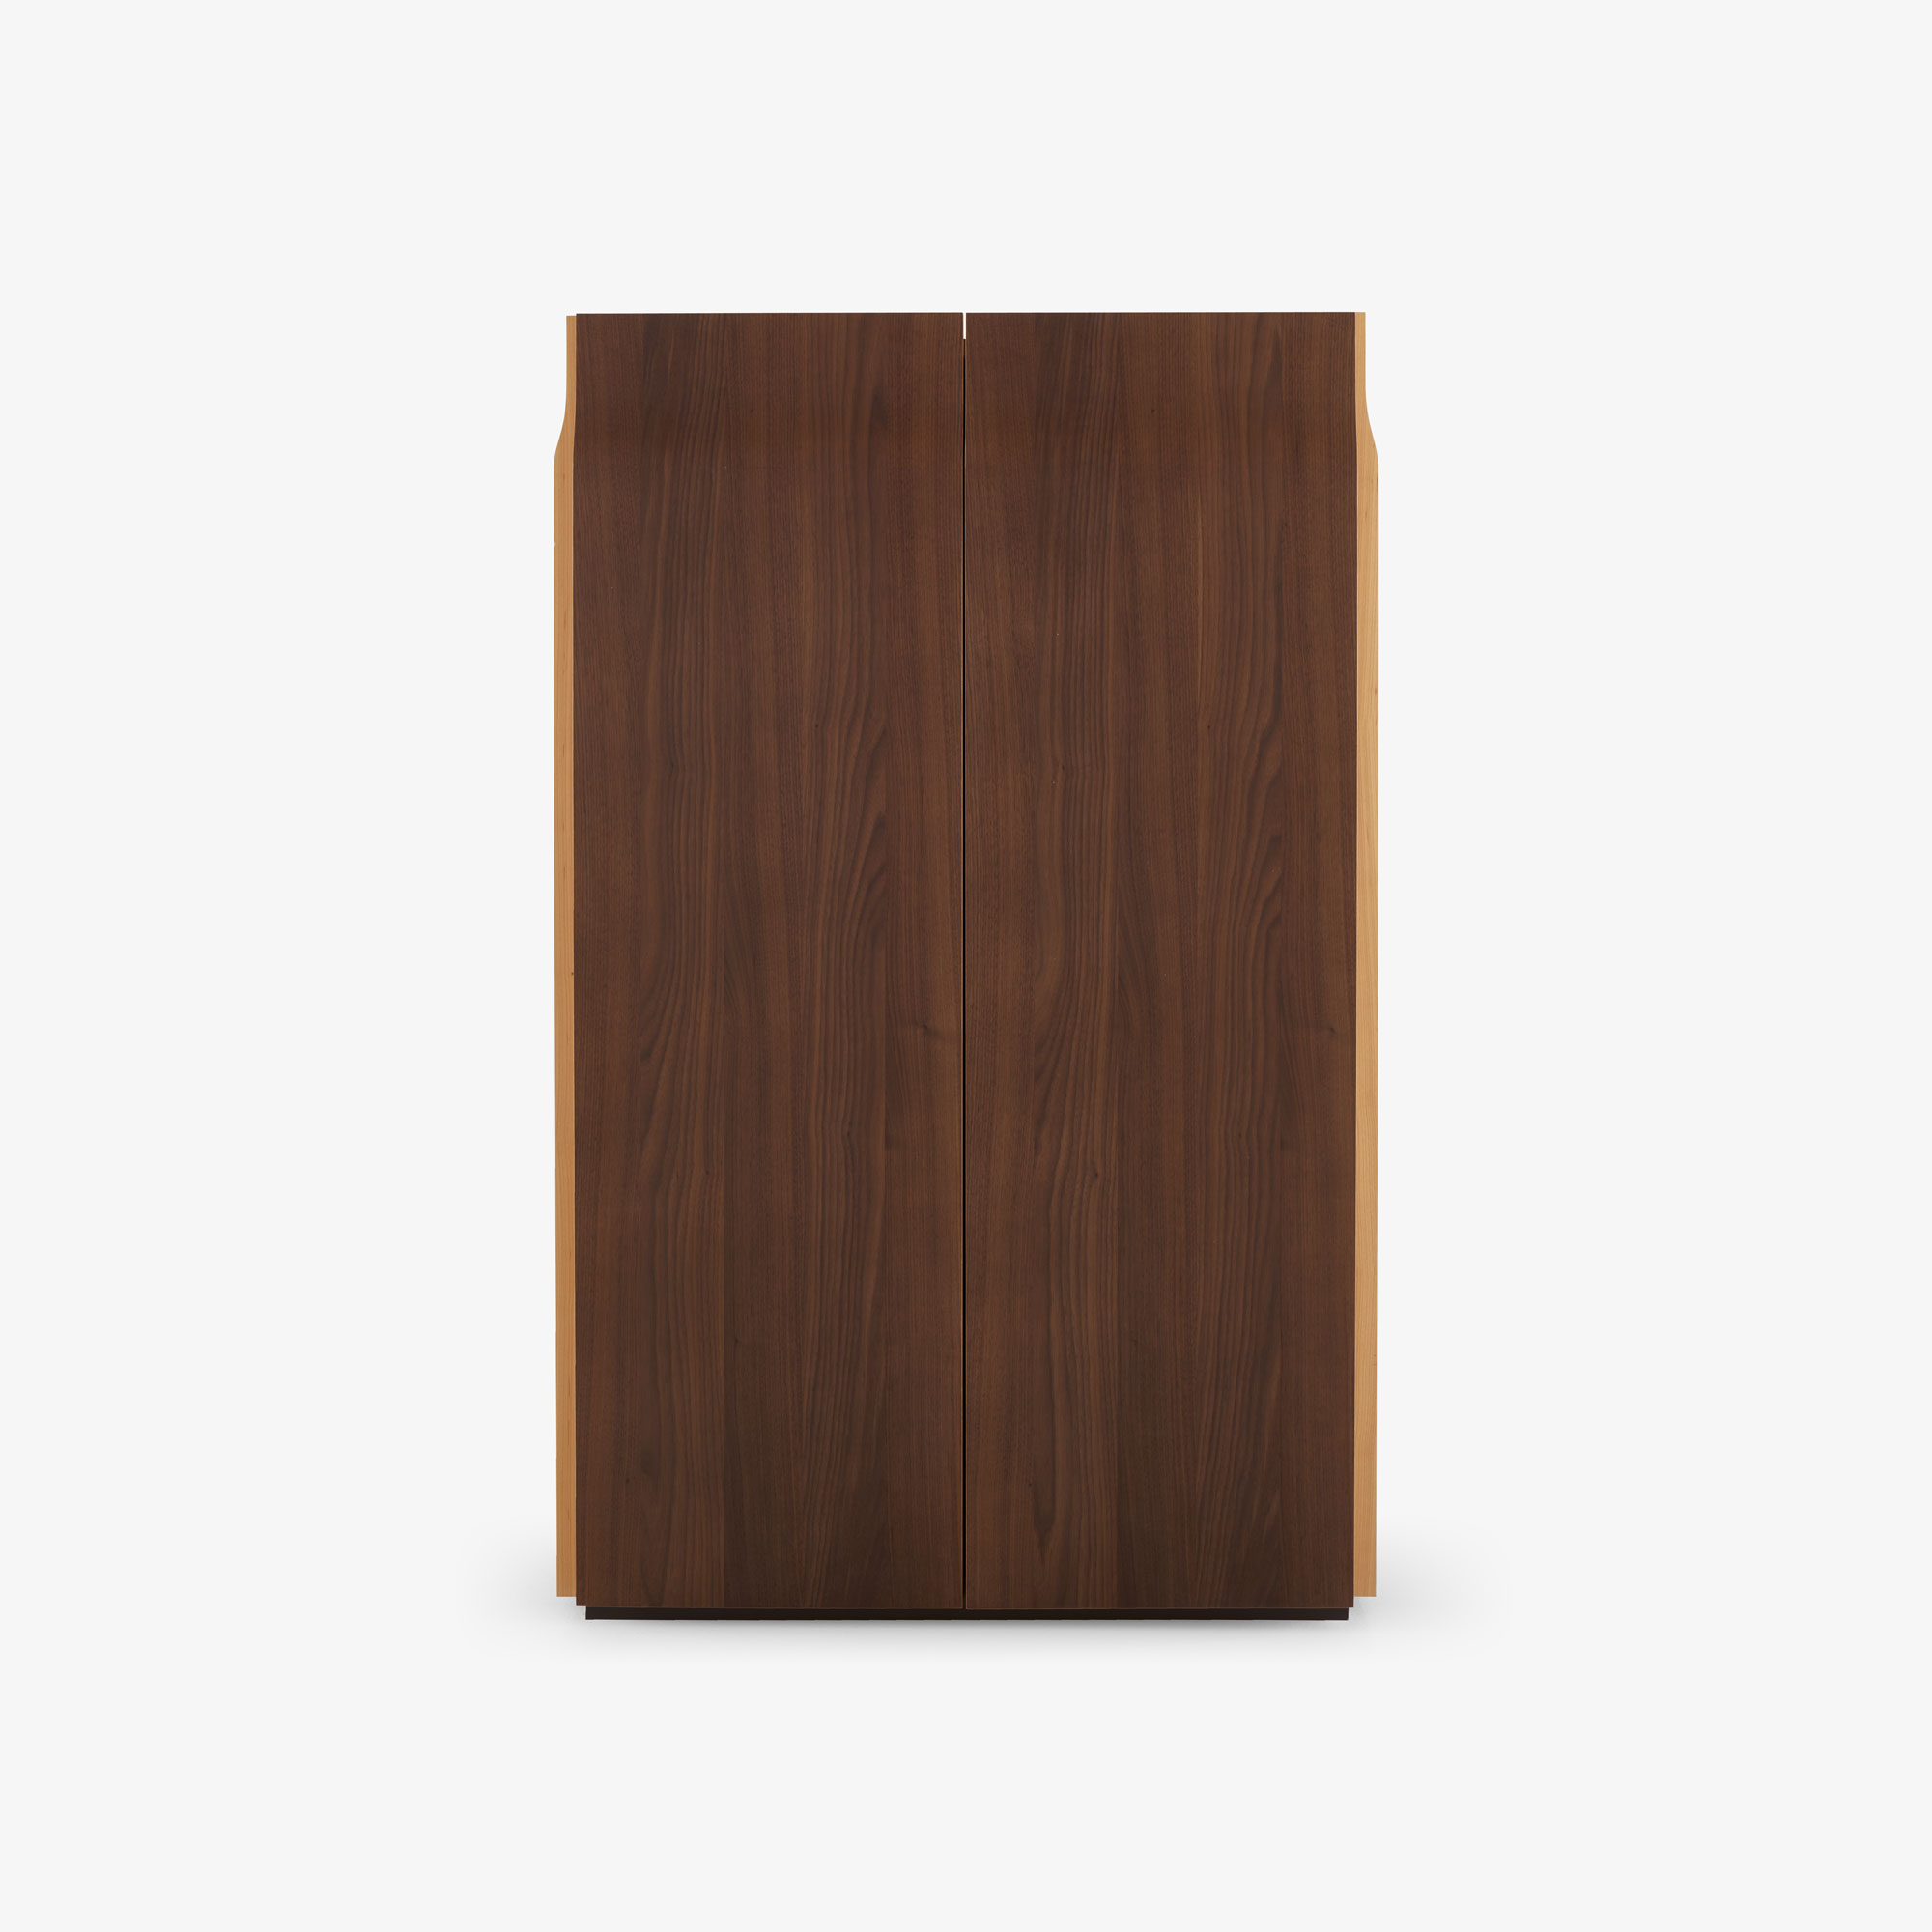 Image 配套柜子 桌面由褐色大理石效果的瓷器制成  1